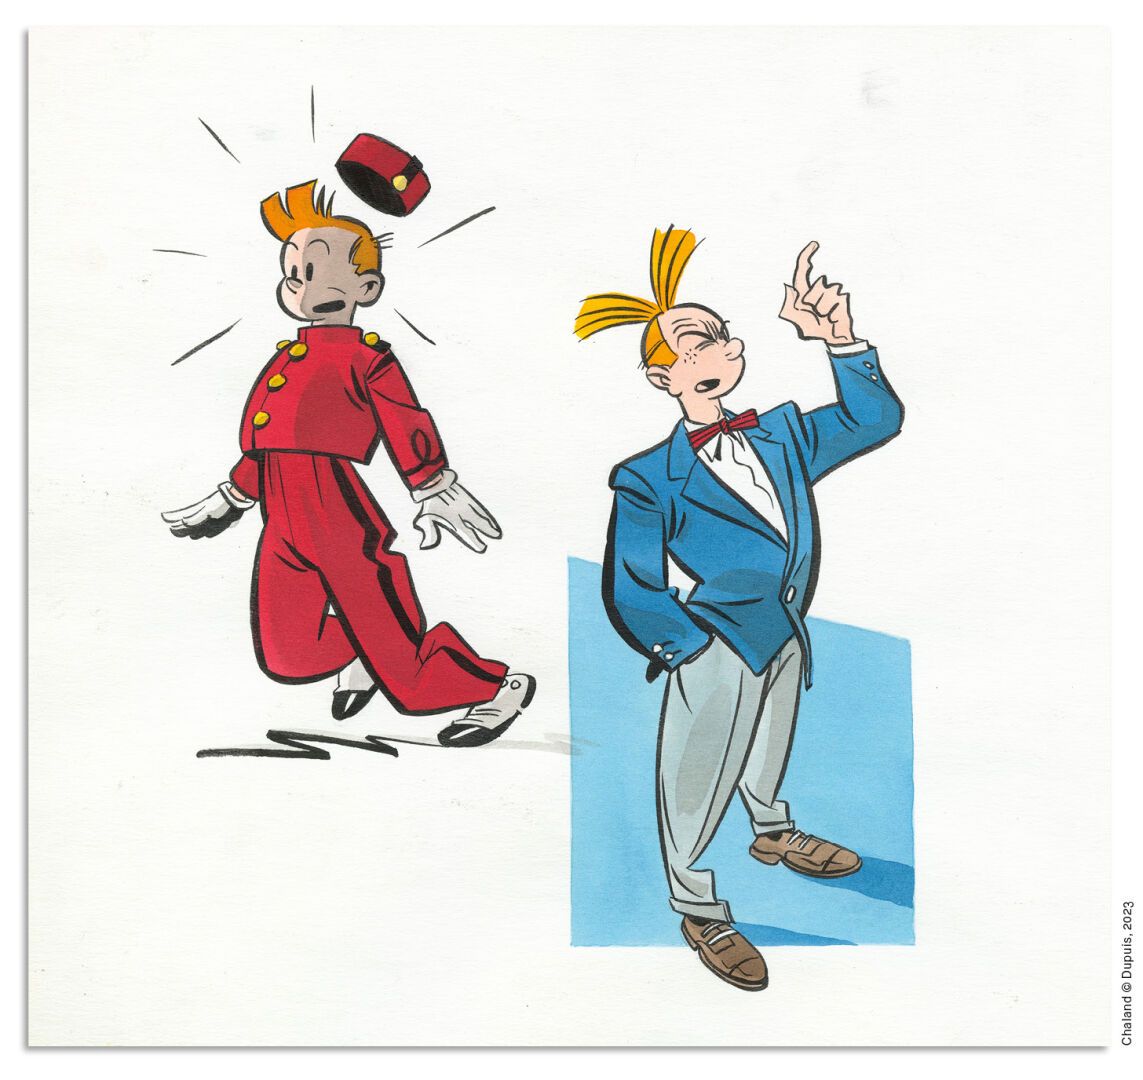 CHALAND YVES CHALAND
SPIROU
Dupuis
Illustrazione originale realizzata nel 1982, &hellip;